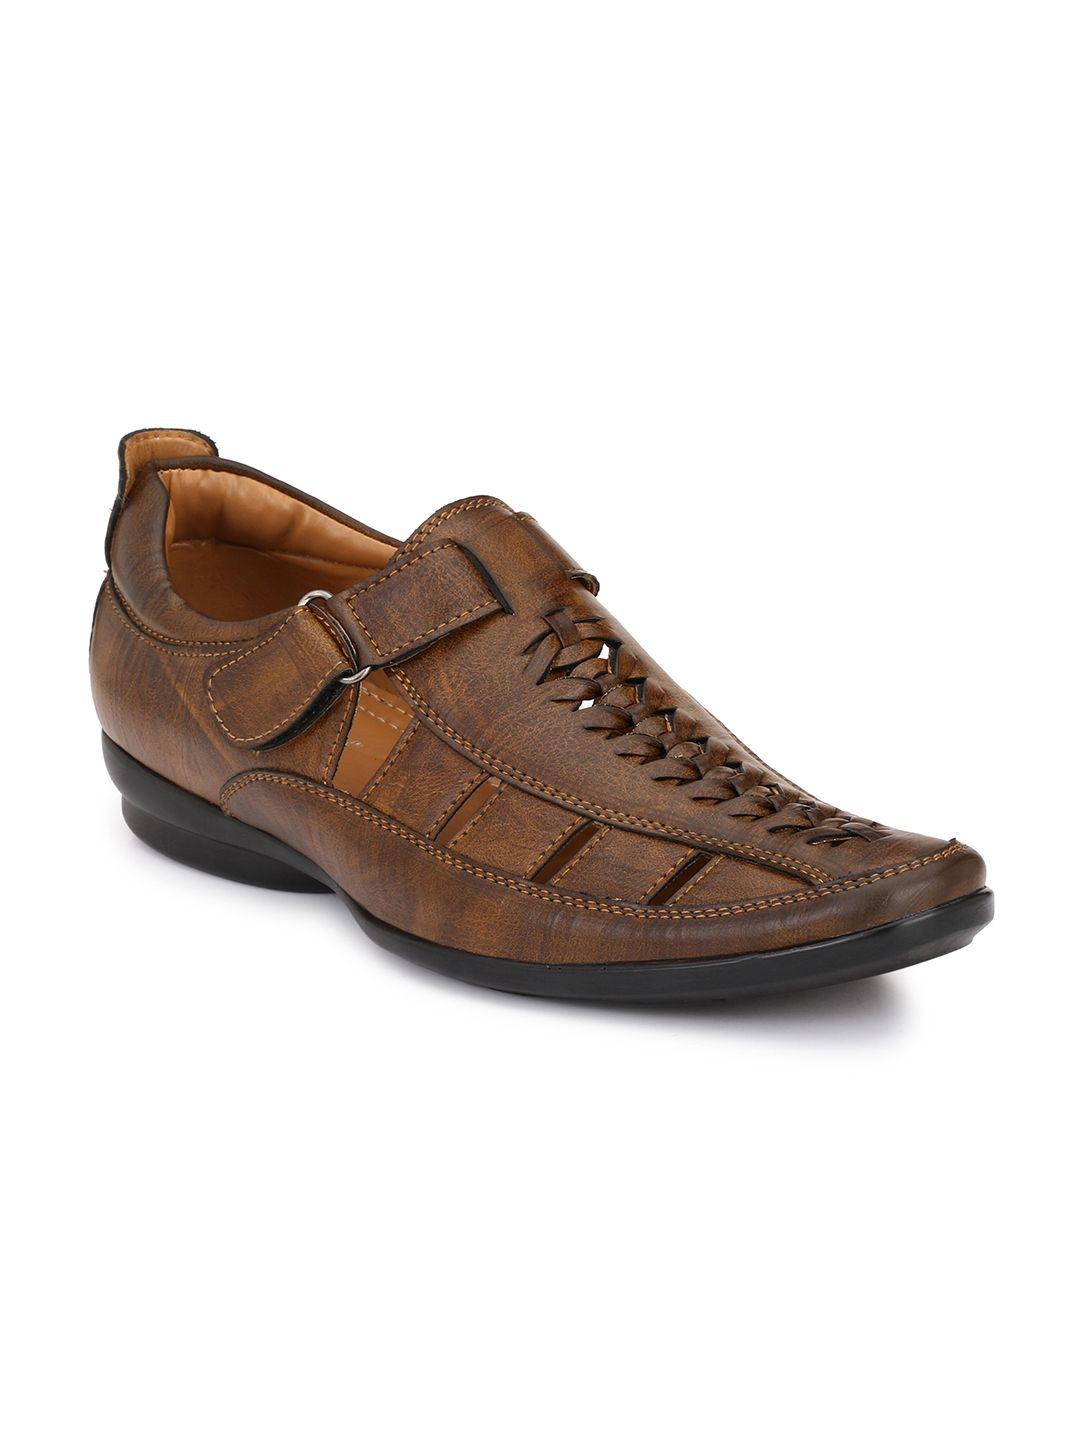 el-paso-men-brown-shoe-style-sandals